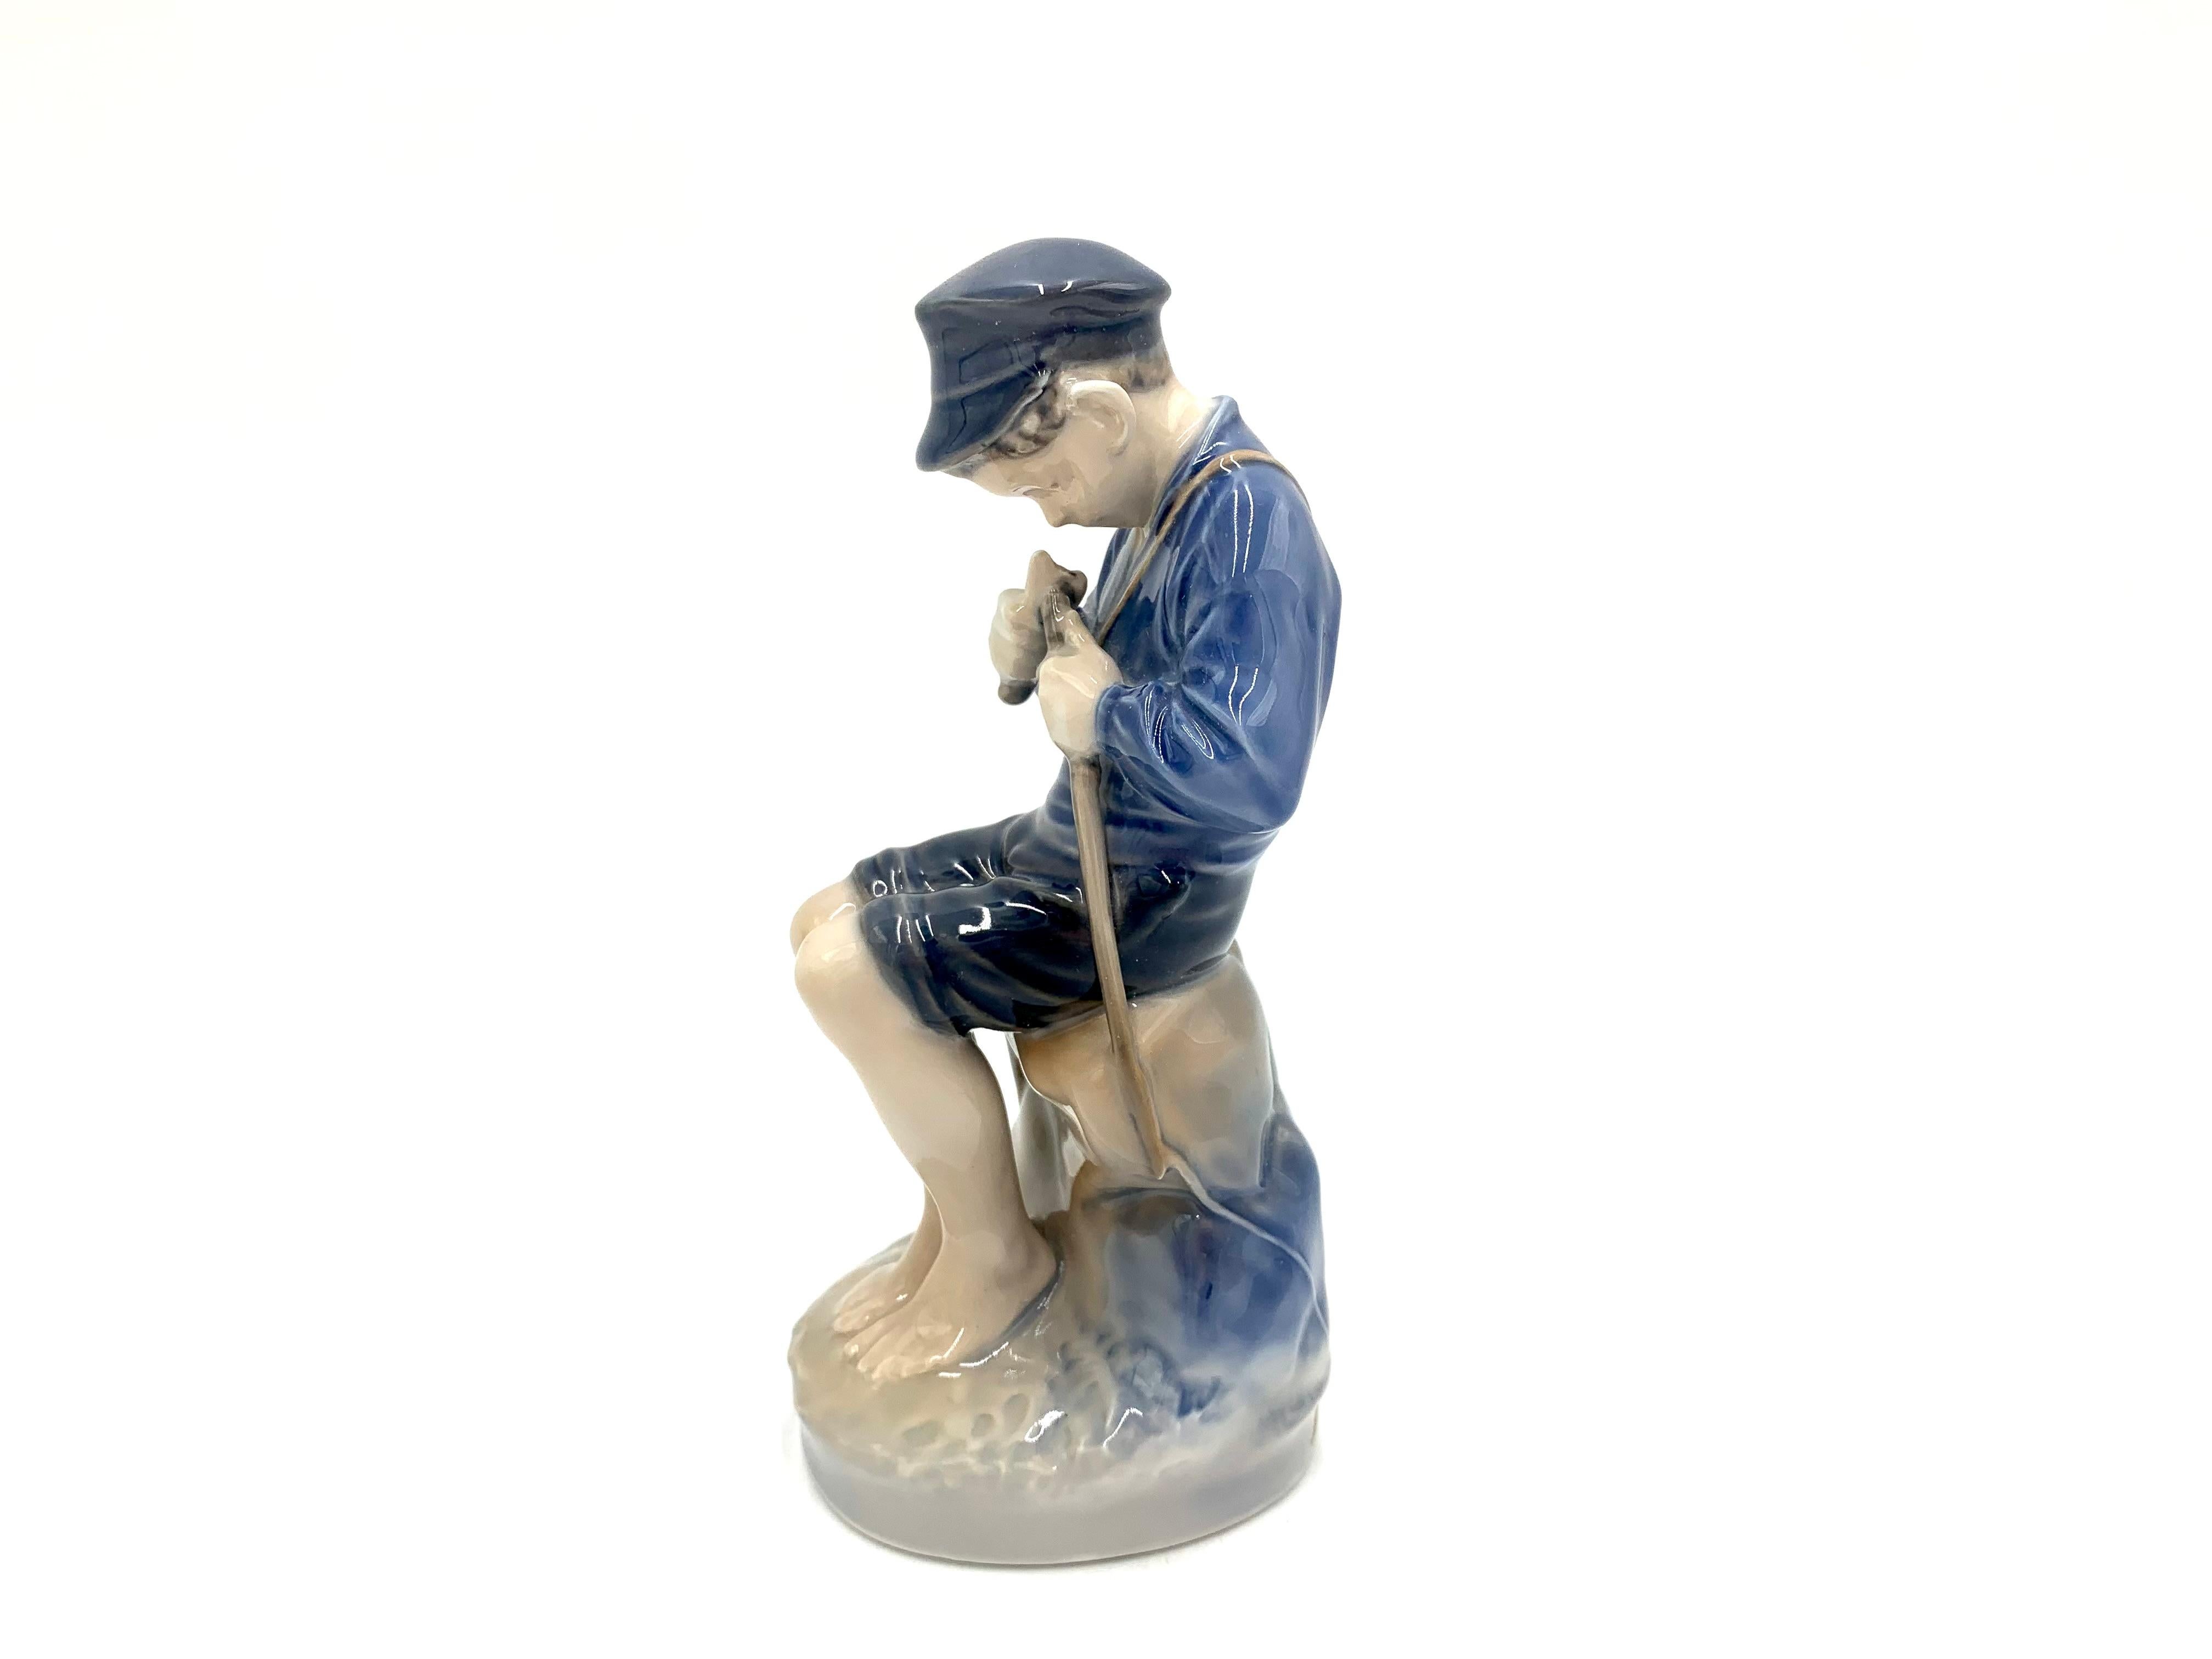 Figurine en porcelaine d'un garçon qui écrase un bâton

Fabriqué au Danemark par la manufacture Royal Copenhagen

Fabriqué dans les années 1960.

Numéro de modèle 905

Très bon état, aucun dommage.

Mesures : Hauteur 19 cm, largeur 8,5 cm,